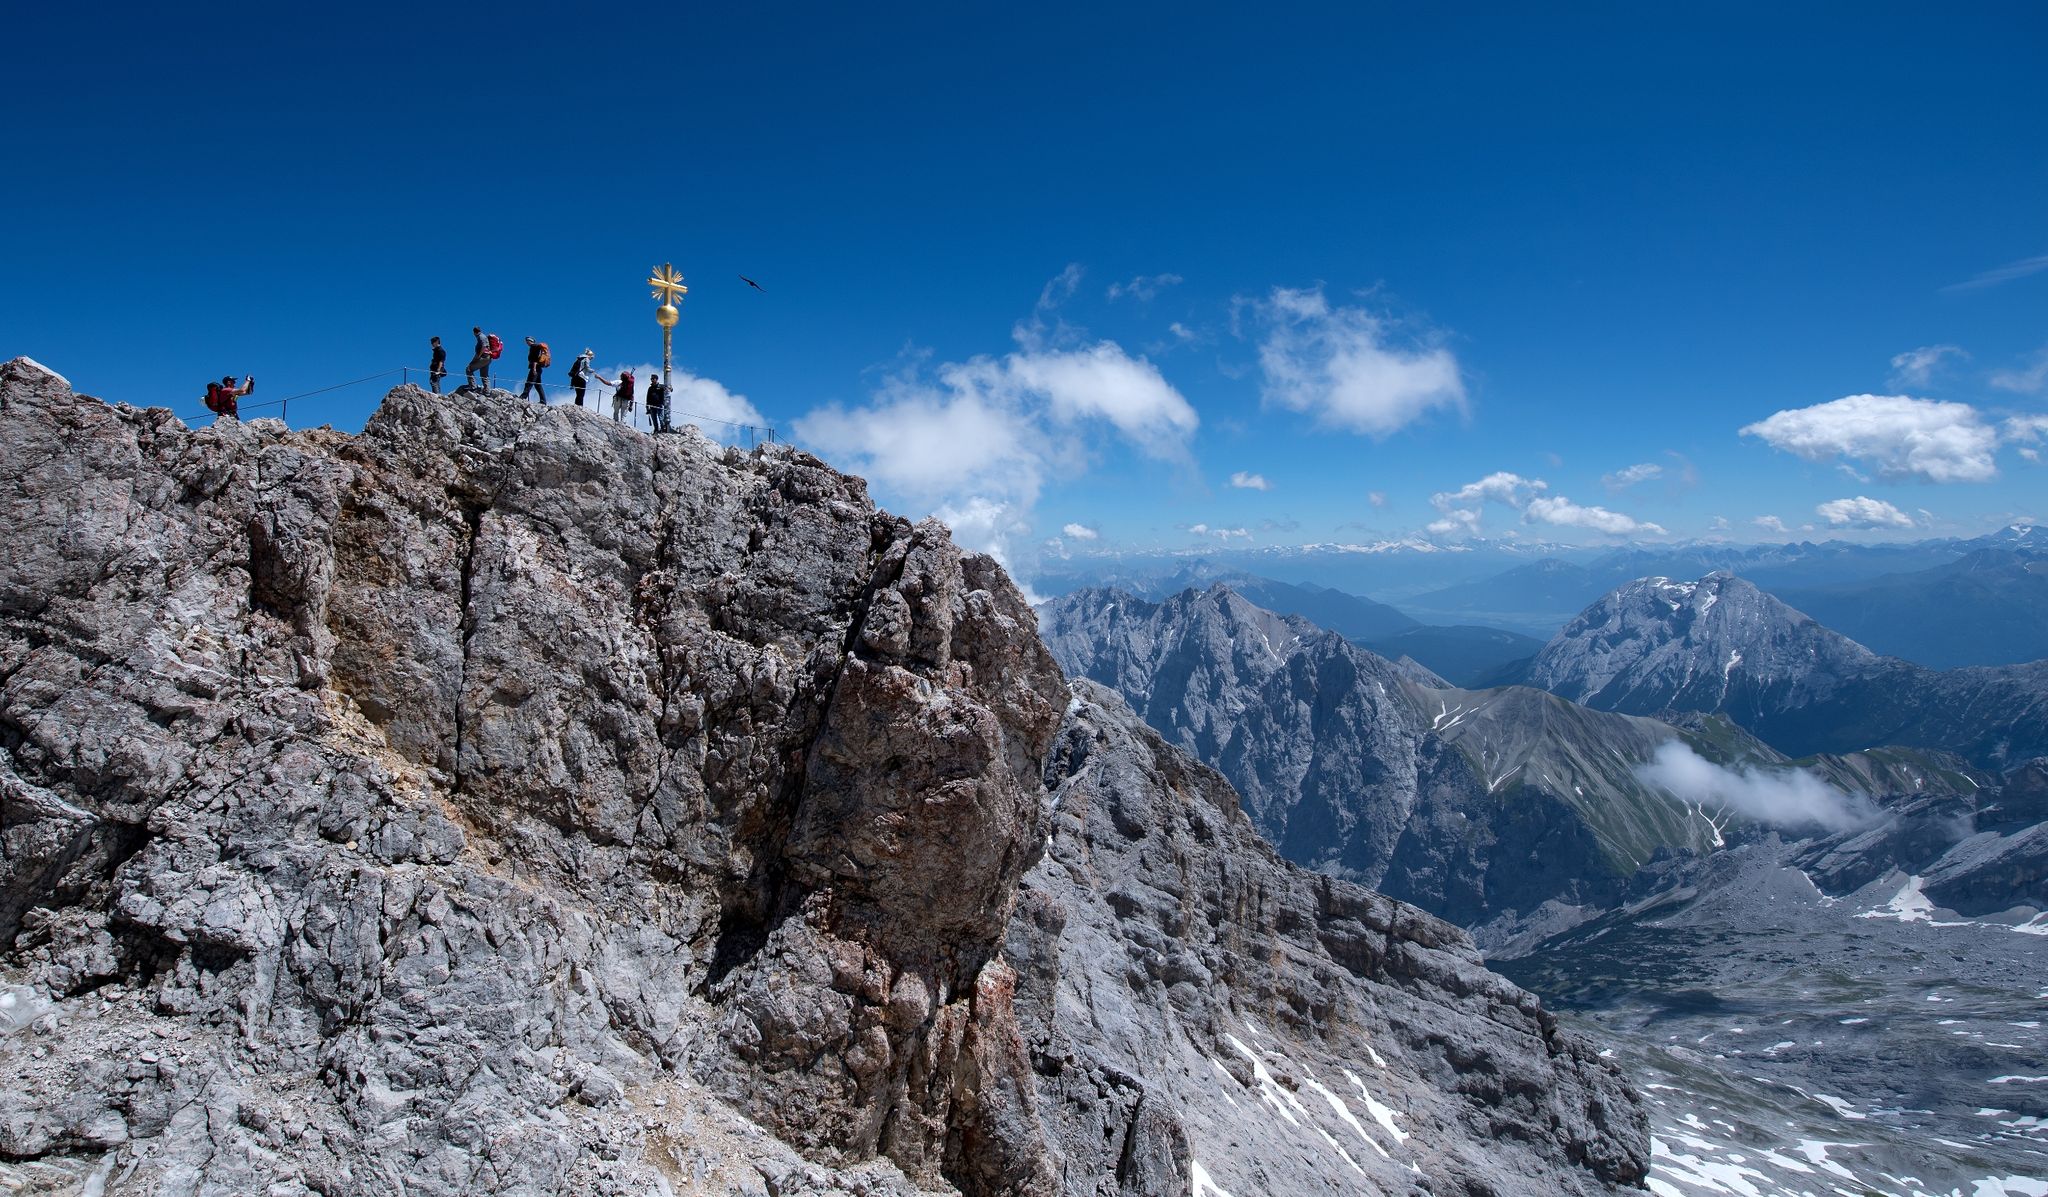 Bergsteiger am Gipfelkreuz der Zugspitze: In dieser Höhe (2962 m) braucht der Körper schon etwas länger, um sich anzupassen.